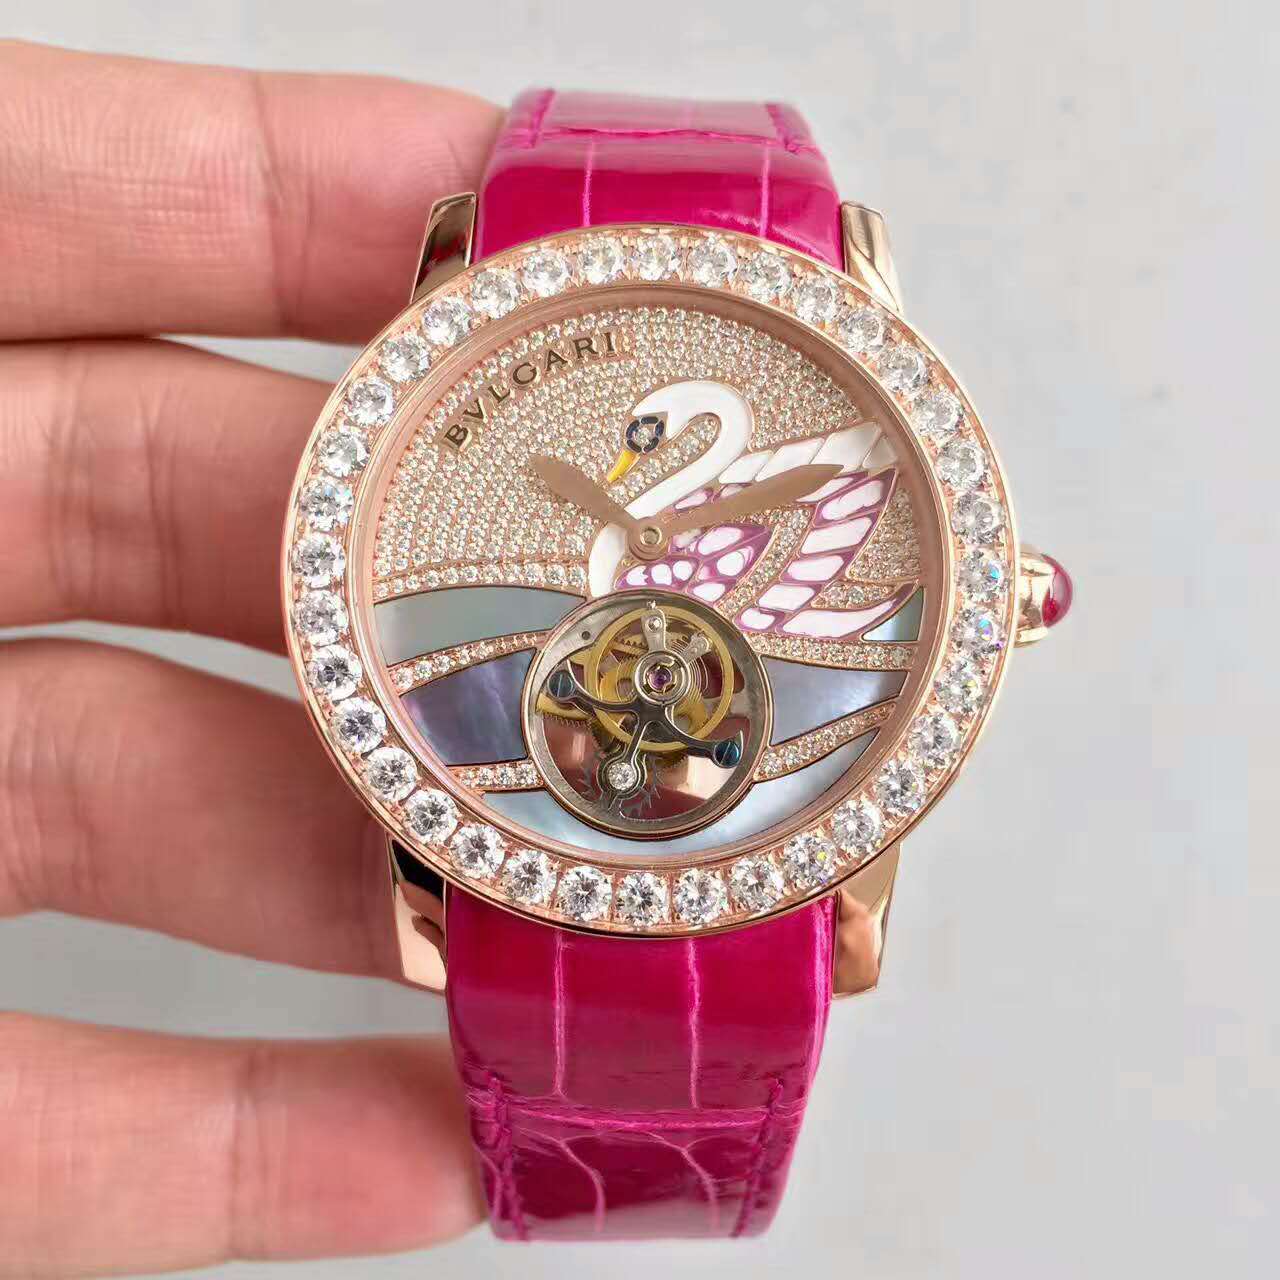 寶格麗 保加利新版 陀飛輪 女士腕錶-rhid-116328